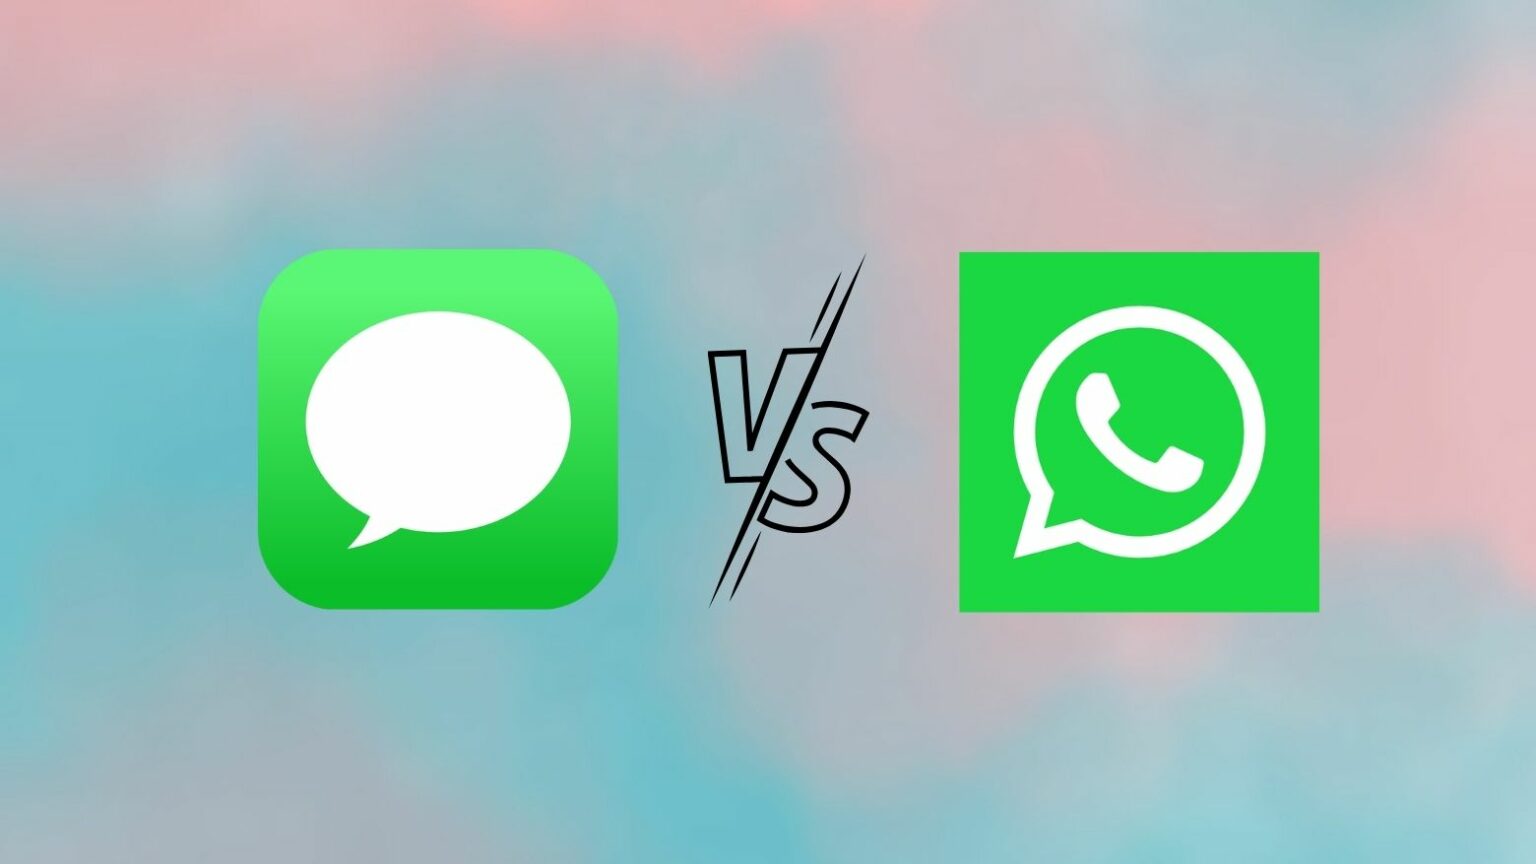 iMessage vs. WhatsApp comparison